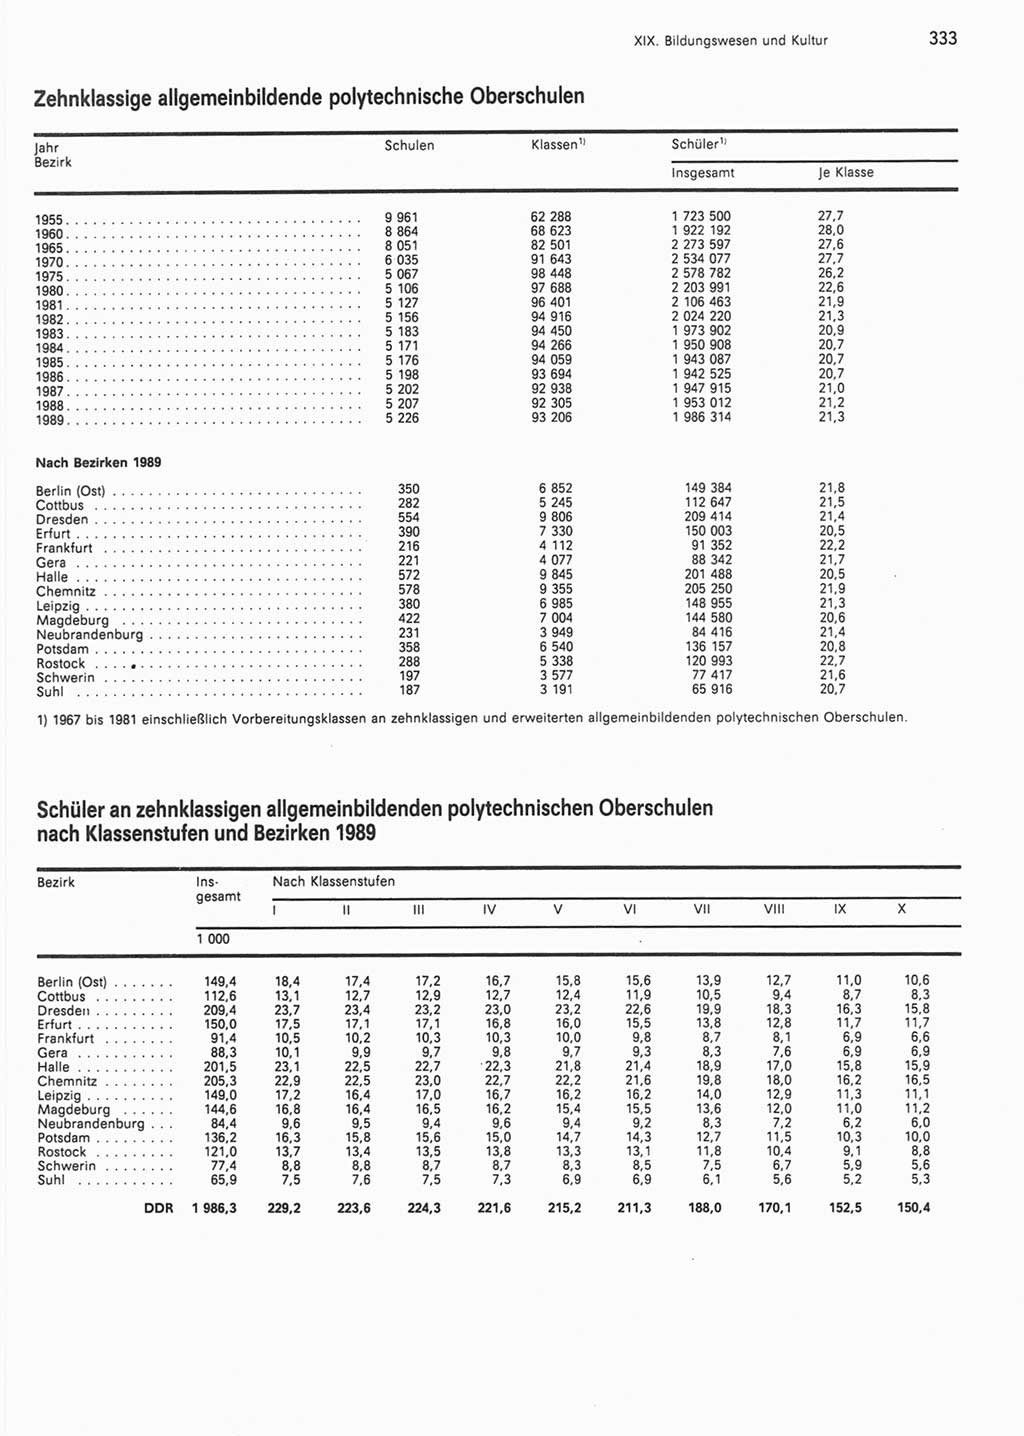 Statistisches Jahrbuch der Deutschen Demokratischen Republik (DDR) 1990, Seite 333 (Stat. Jb. DDR 1990, S. 333)